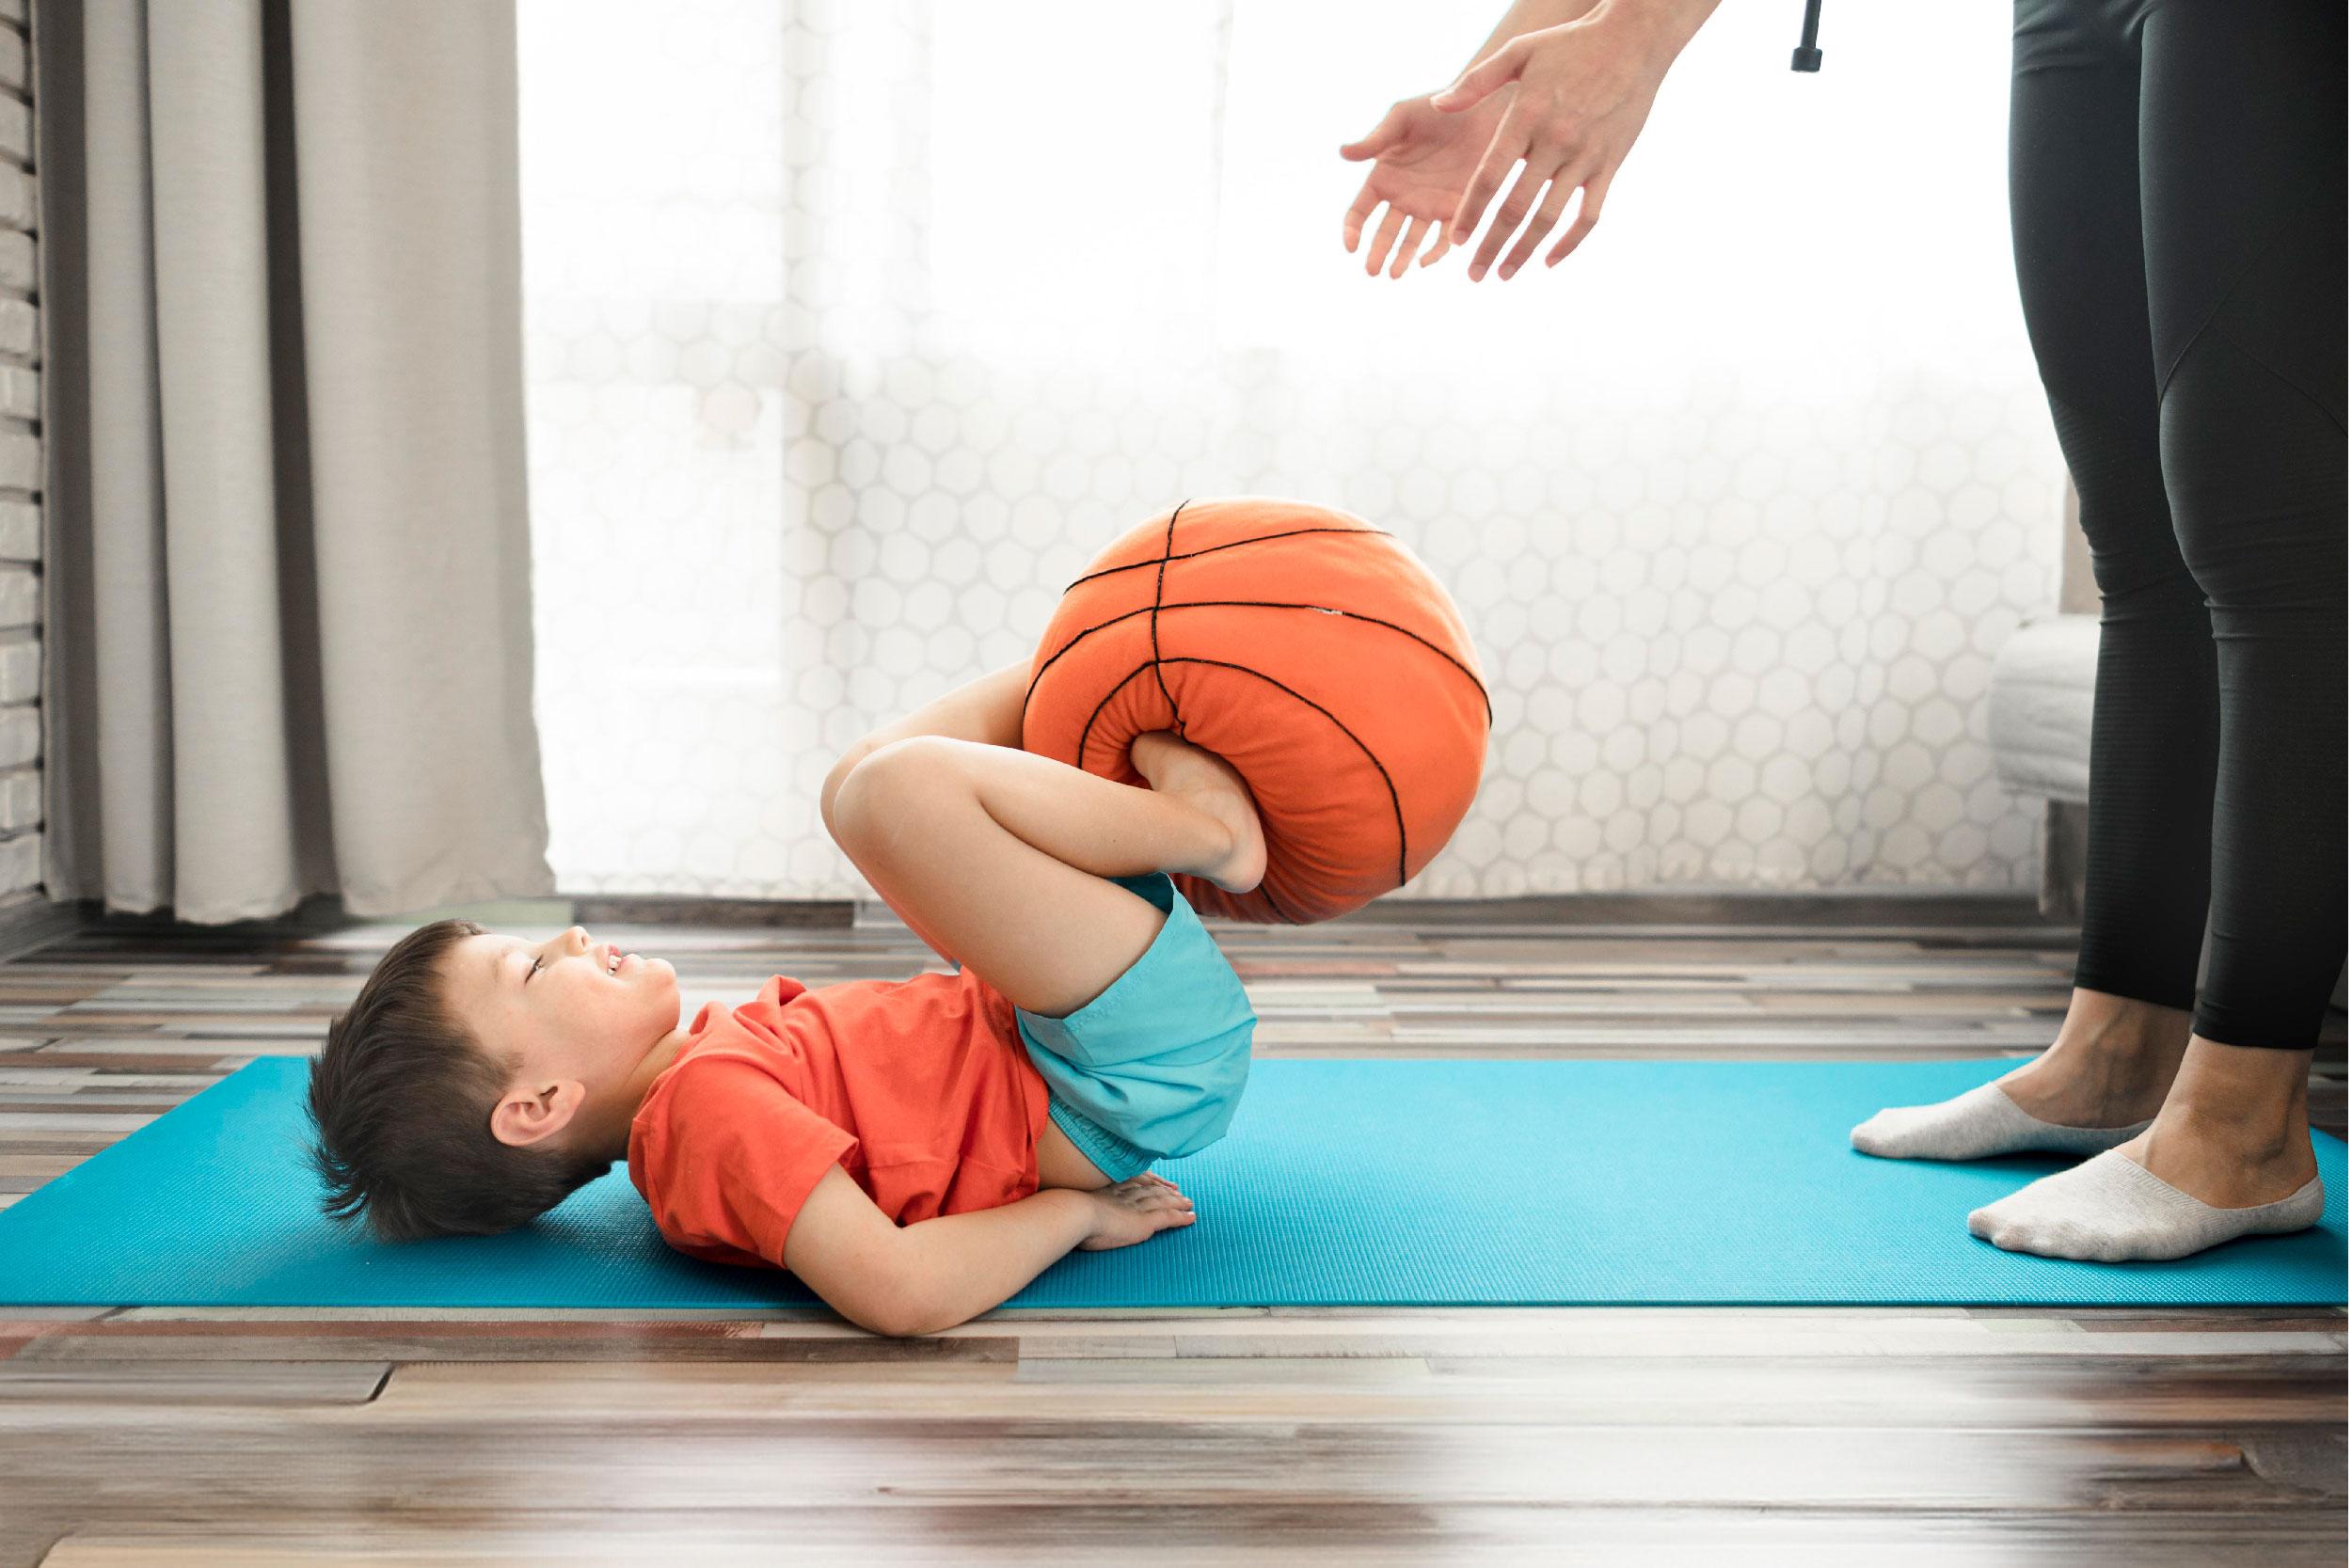 Foto de criança deitada no chão com bola nos pés passando a mãos adultas